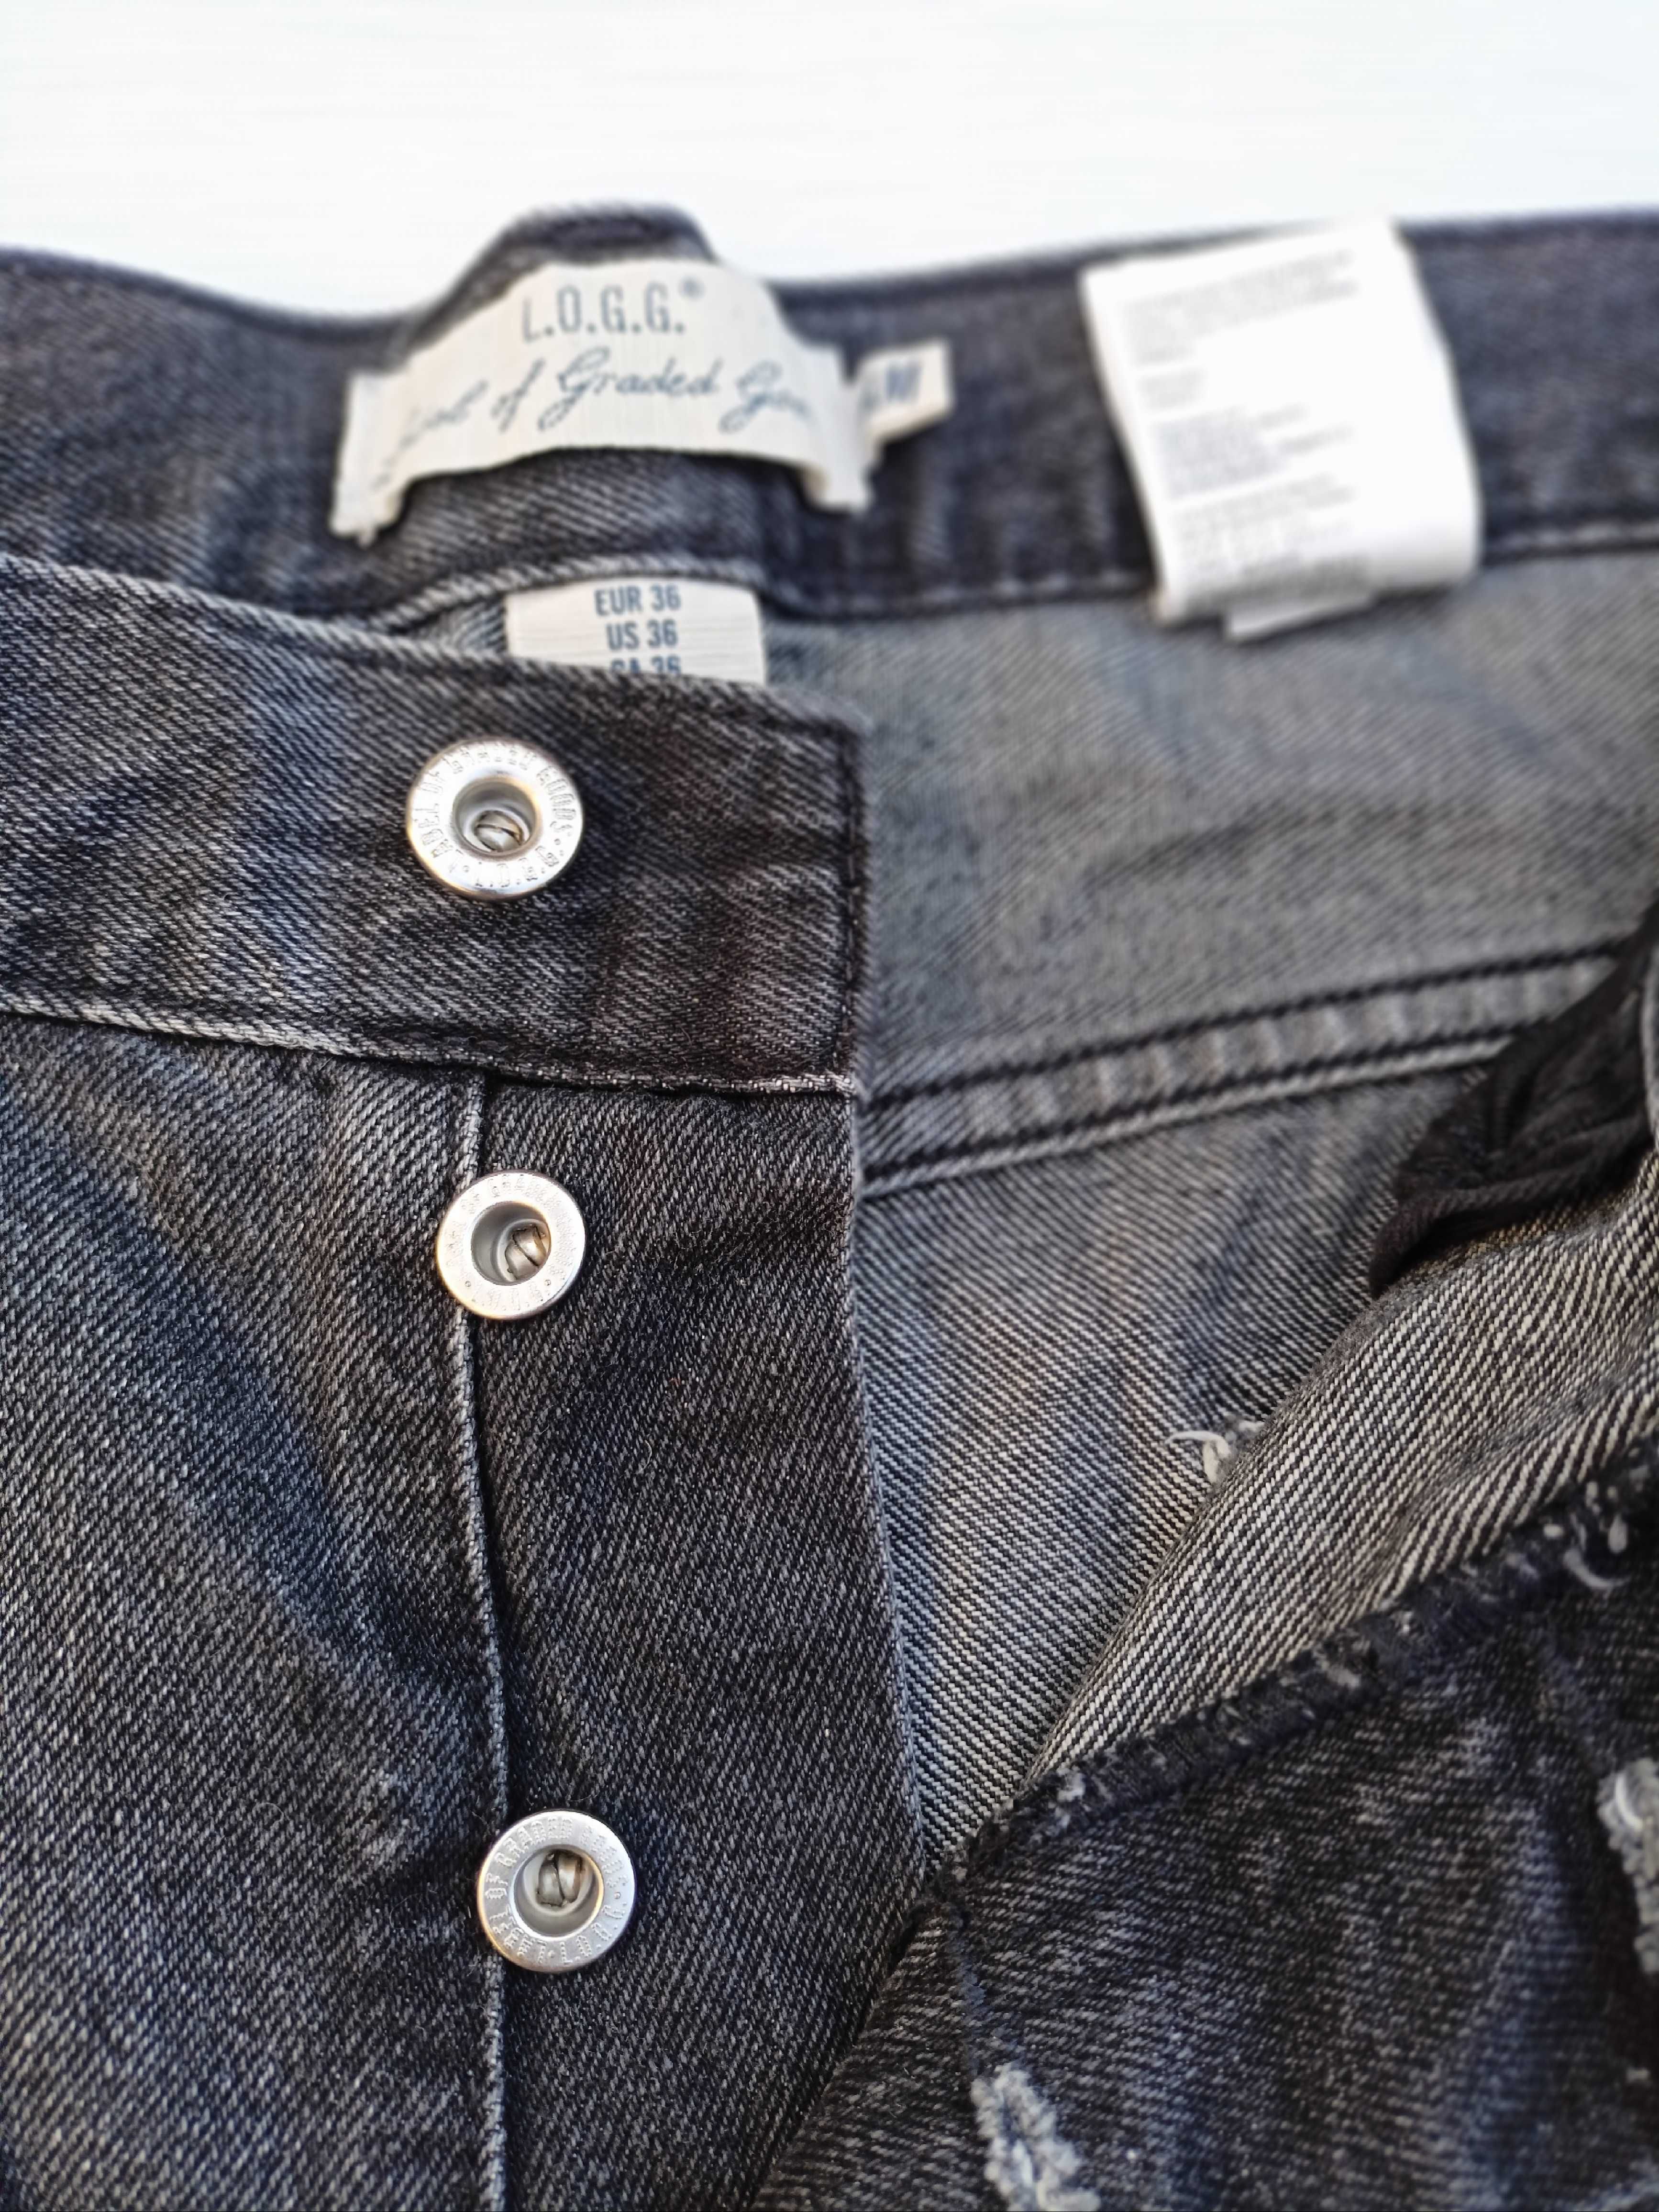 H&M L.O.G.G. krótkie spodenki szorty męskie jeansy 36